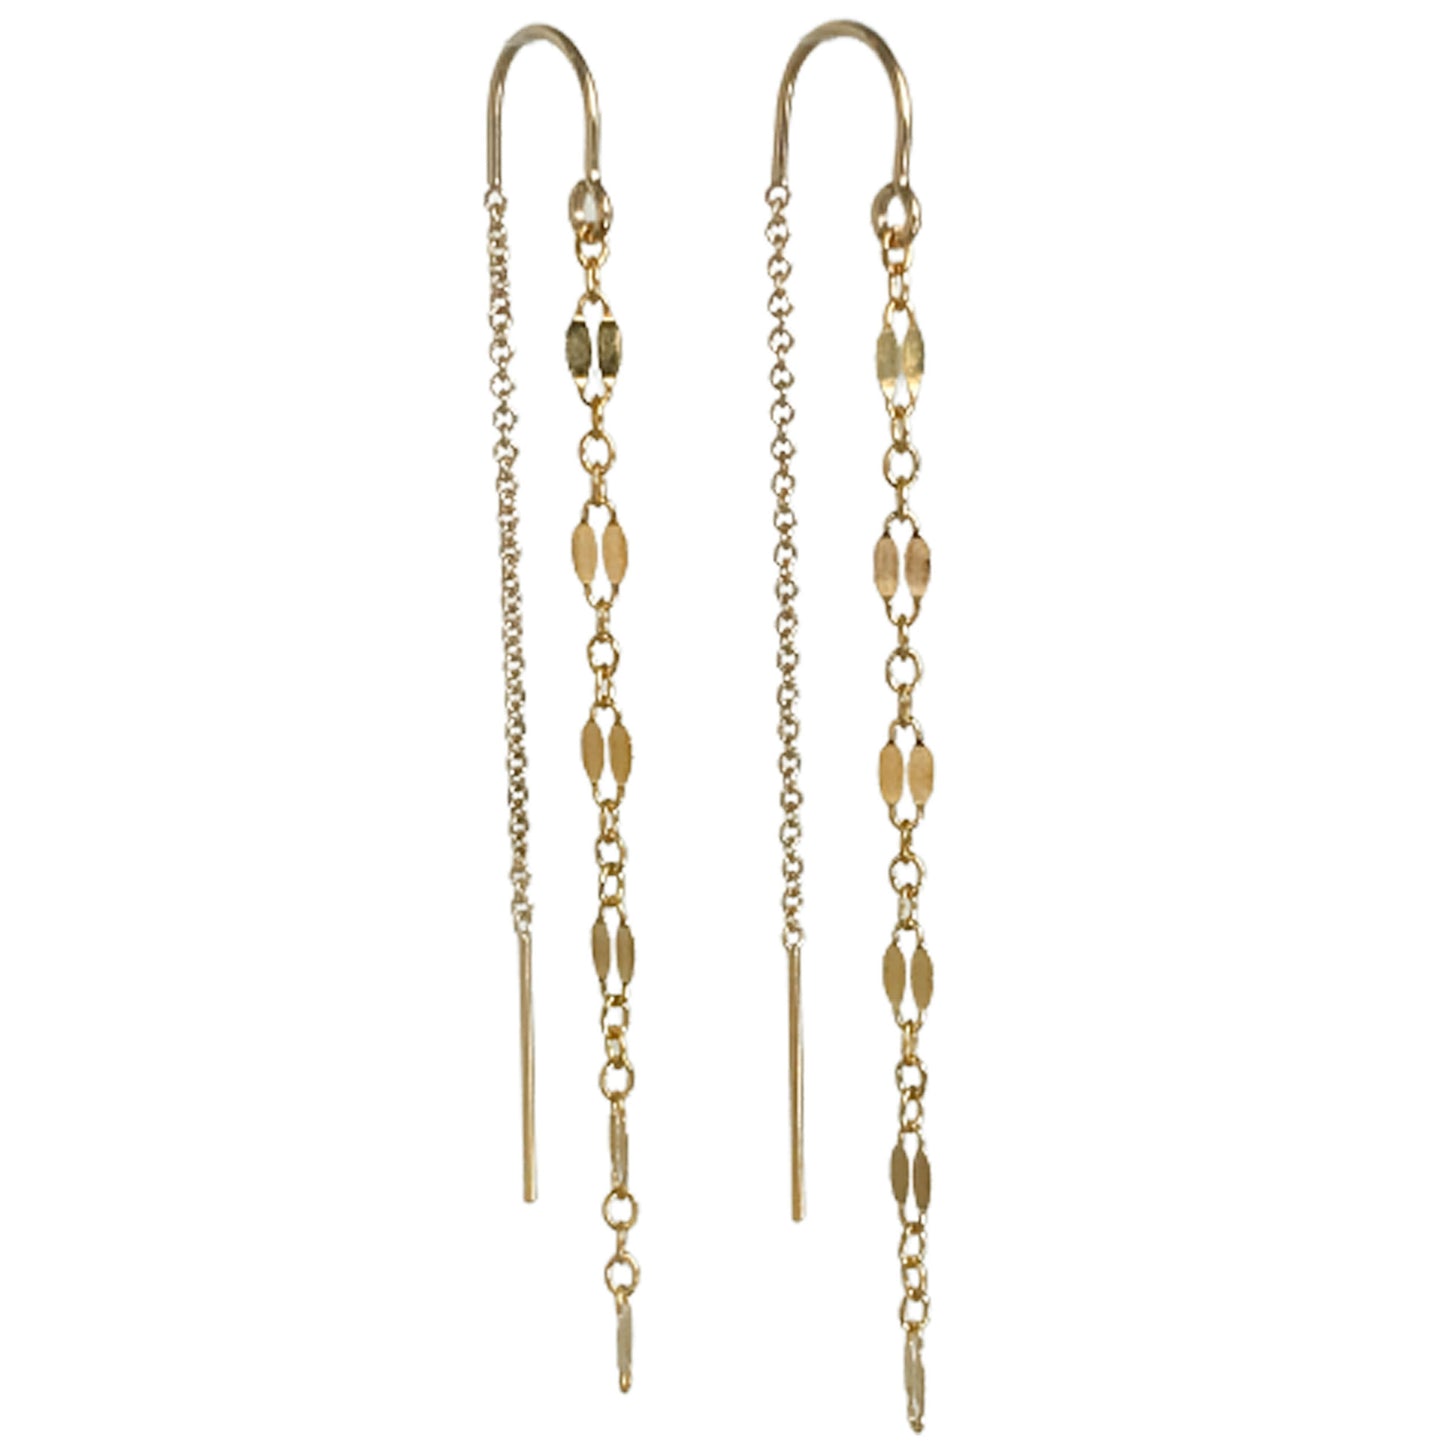 Gold Threader Earrings - Long Chain Earrings